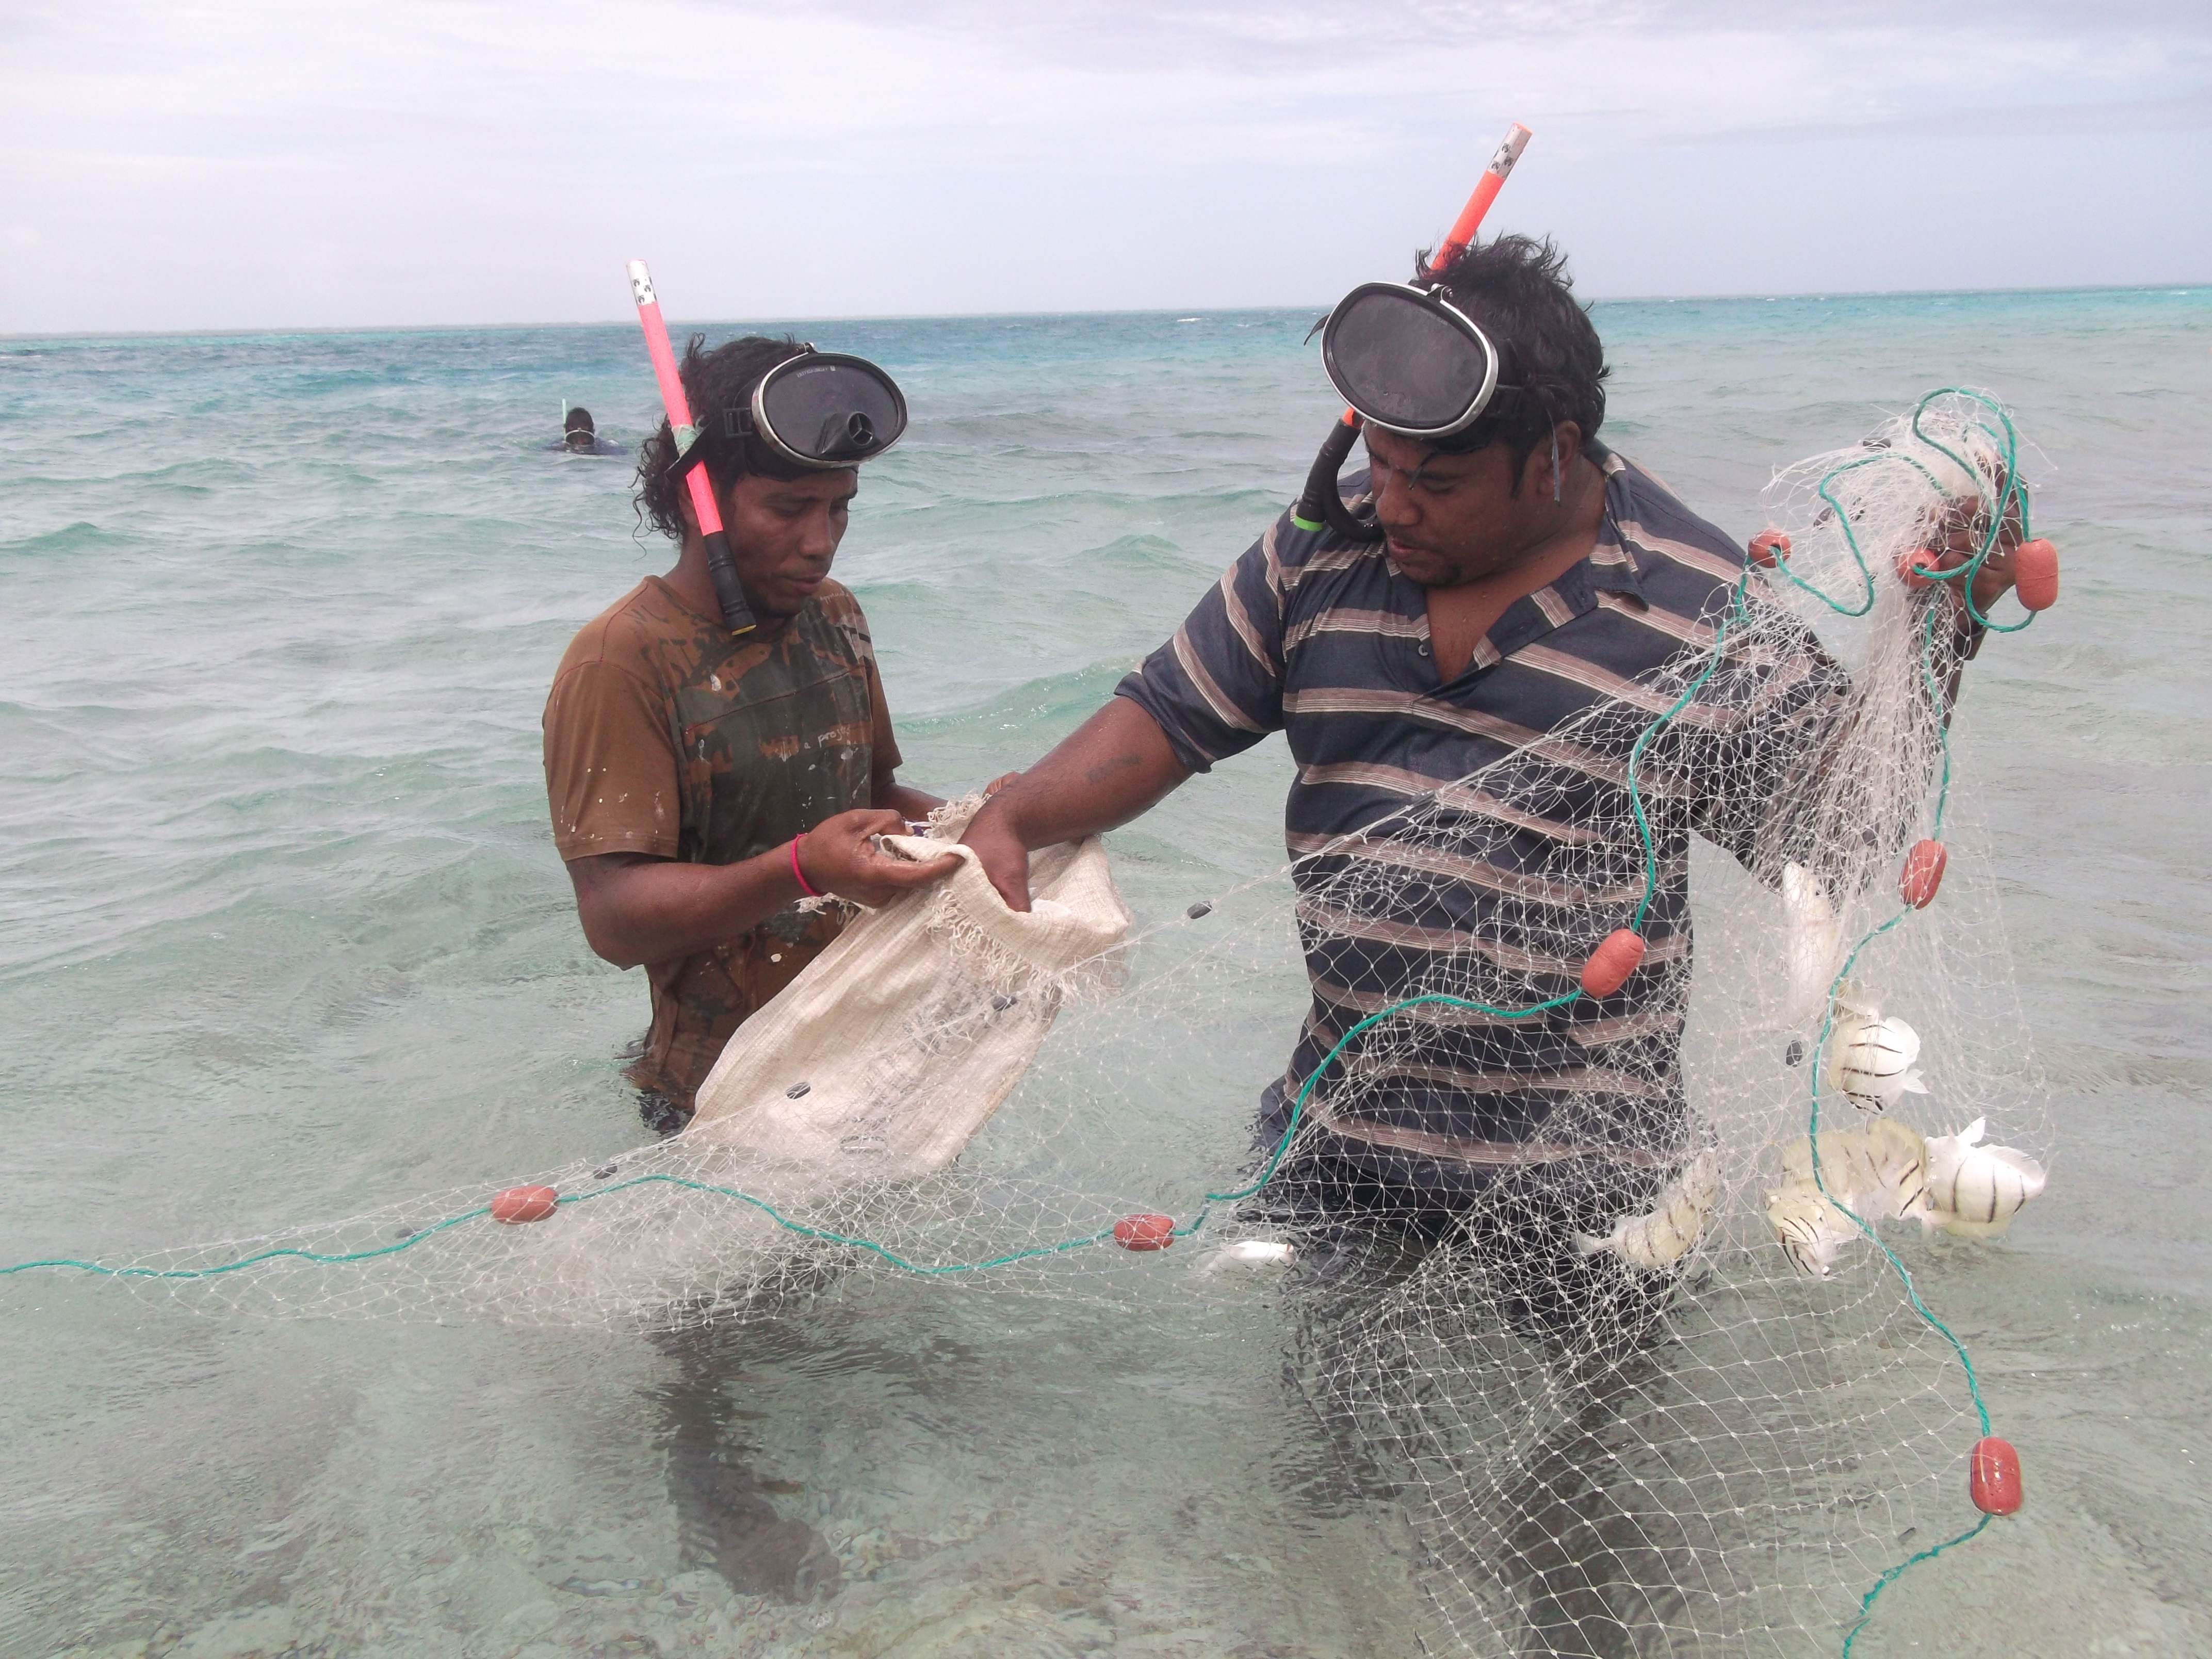 Küstenfischer fischen nicht nur mit Booten, sondern auch im flachen Wasser mit Netzen